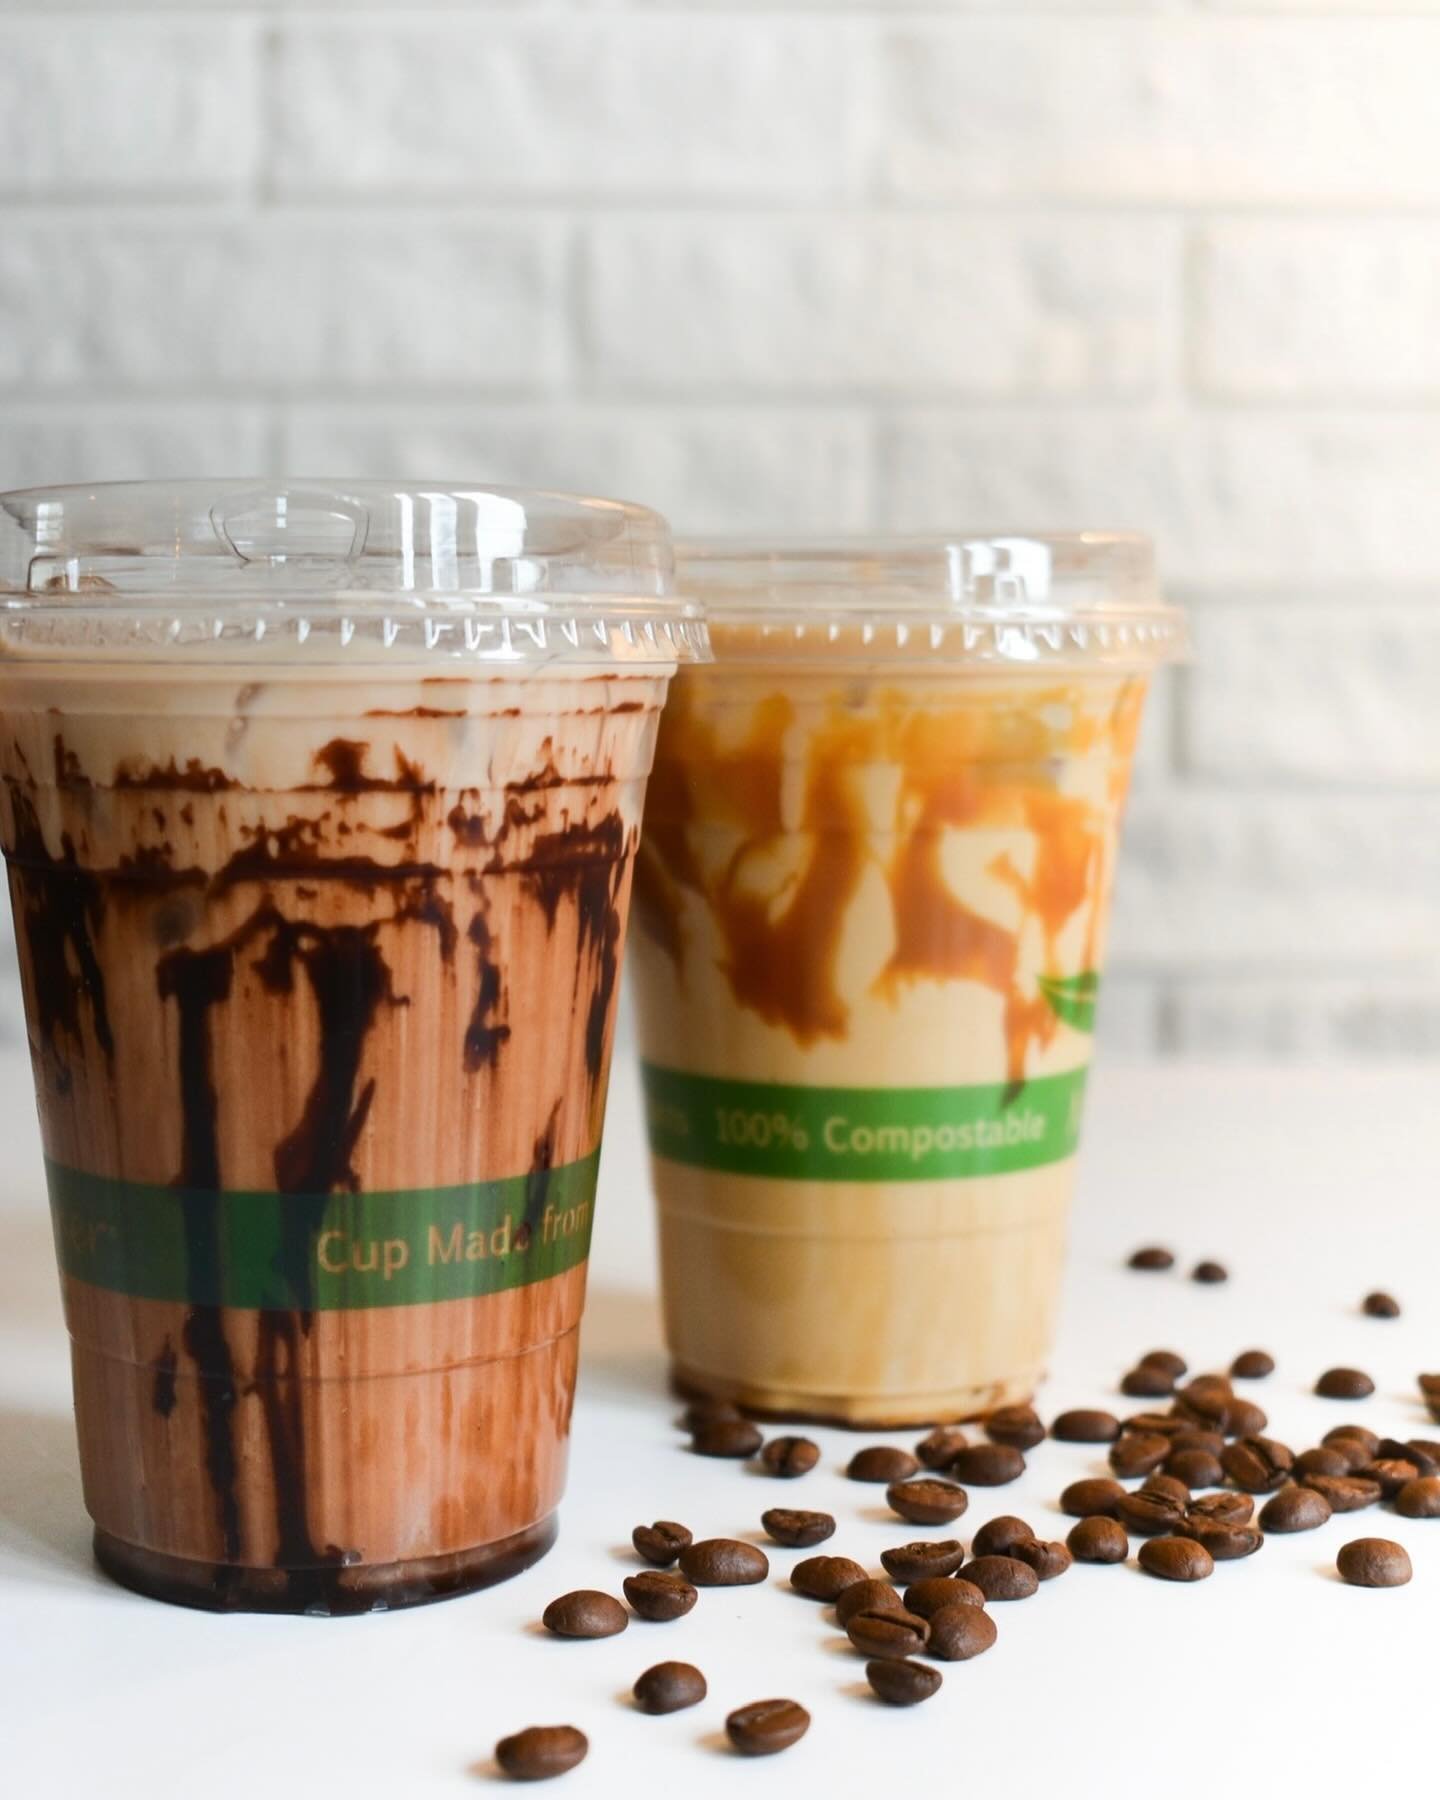 Iced Coffee Season ☕️🧊

#icedcoffee #icedcoffeeaddict #yegcafe #littlebrickyeg